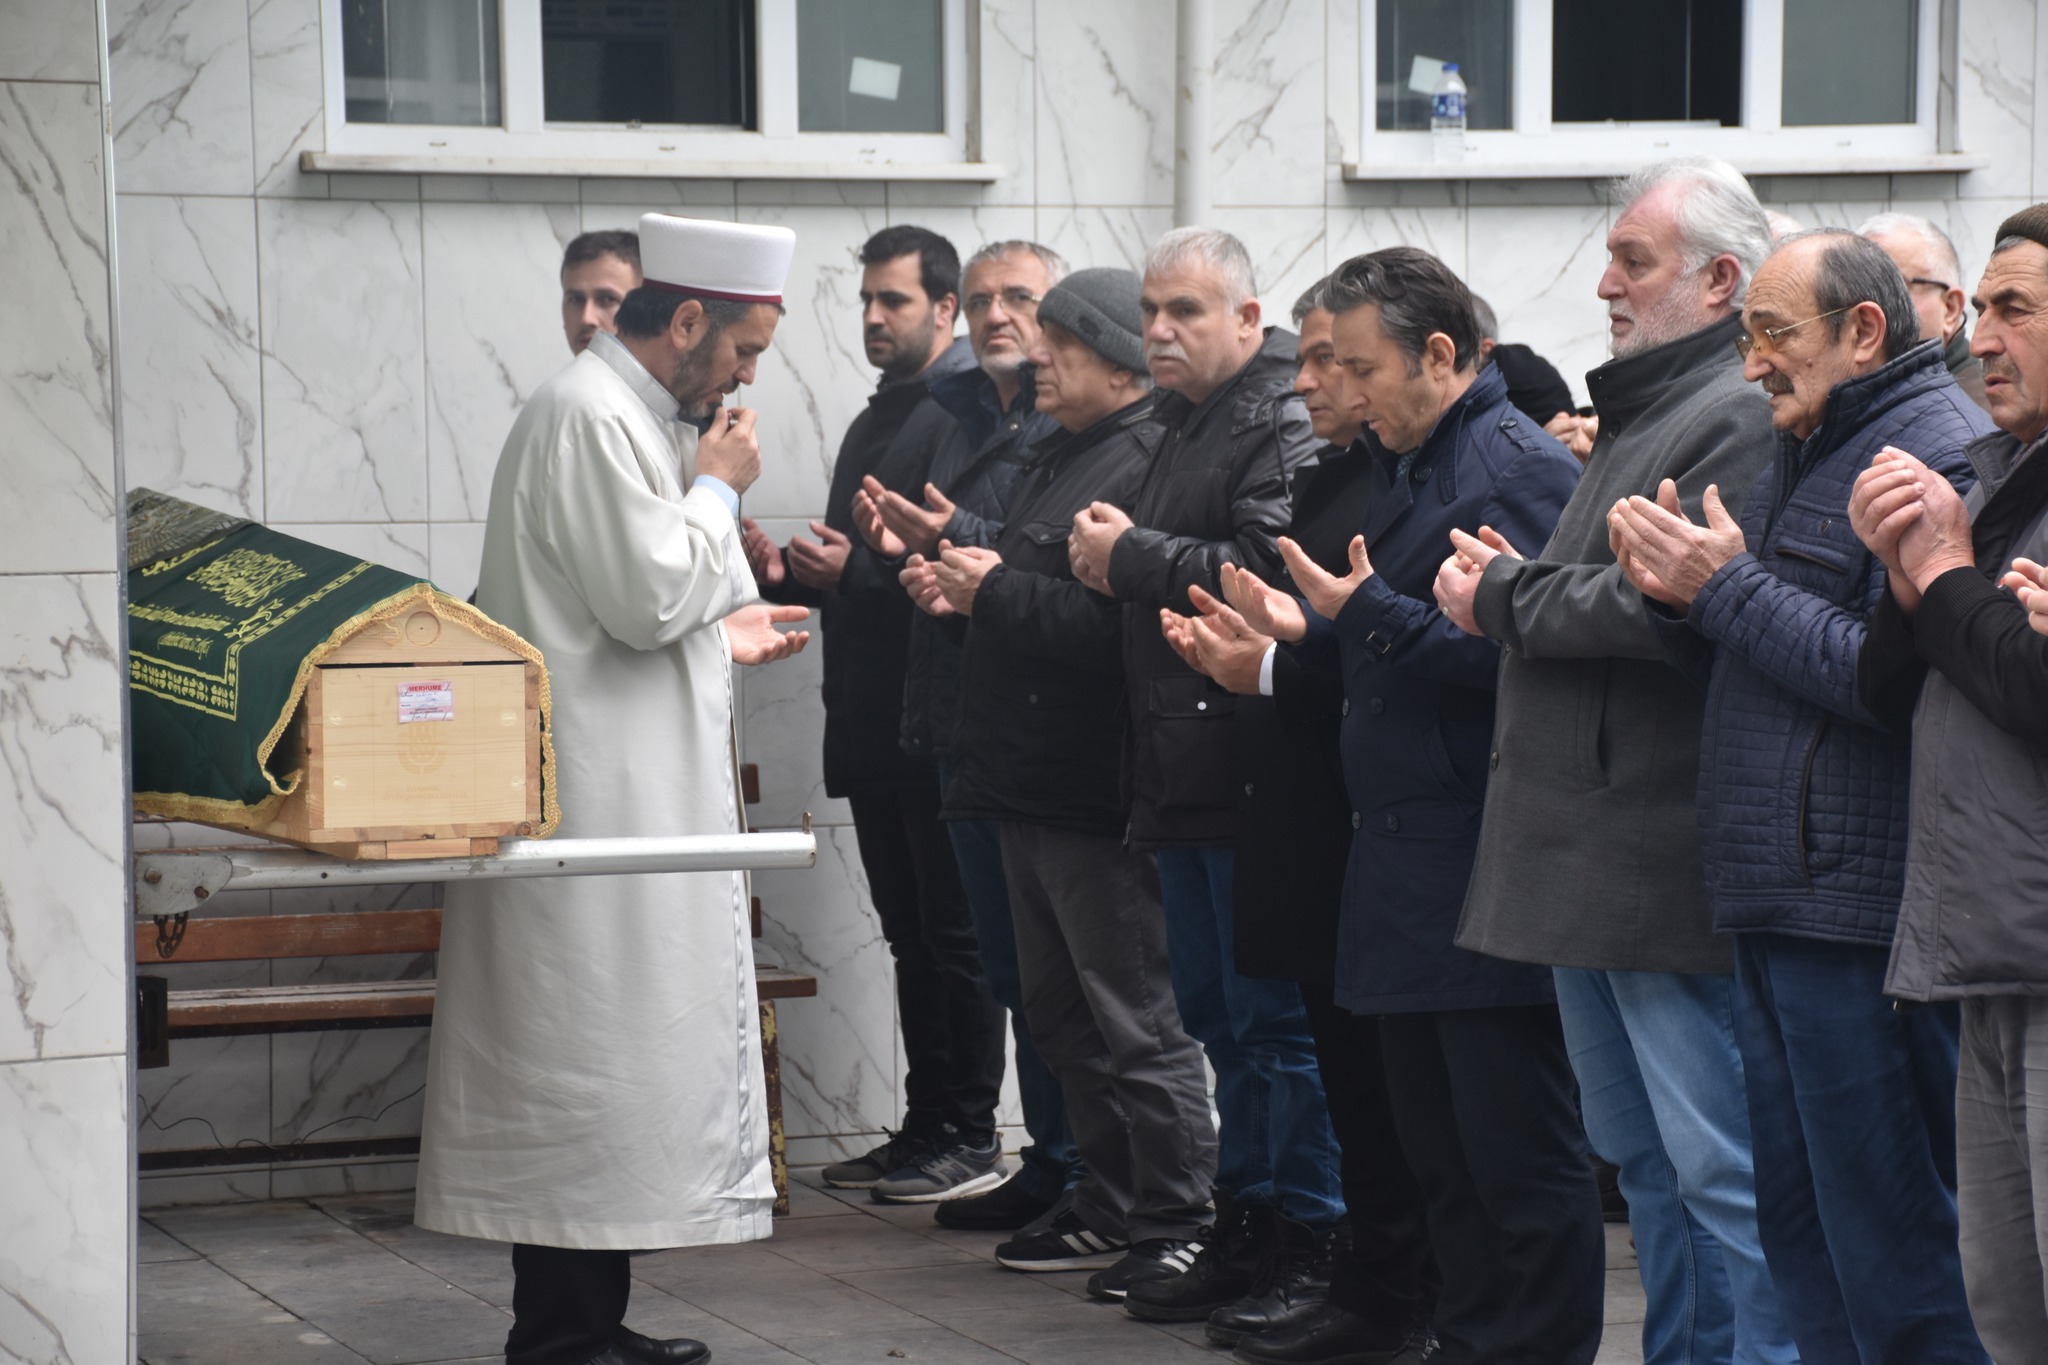 Belediye Başkanımız Hüseyin Kıyma, belediyemizden emekli Mali Hizmetler Müdürü Ayşın Hopaç’ın vefat eden annesi Hakime Çakıcı’nın cenaze namazına katıldı, ailesine baş sağlığında bulundu.